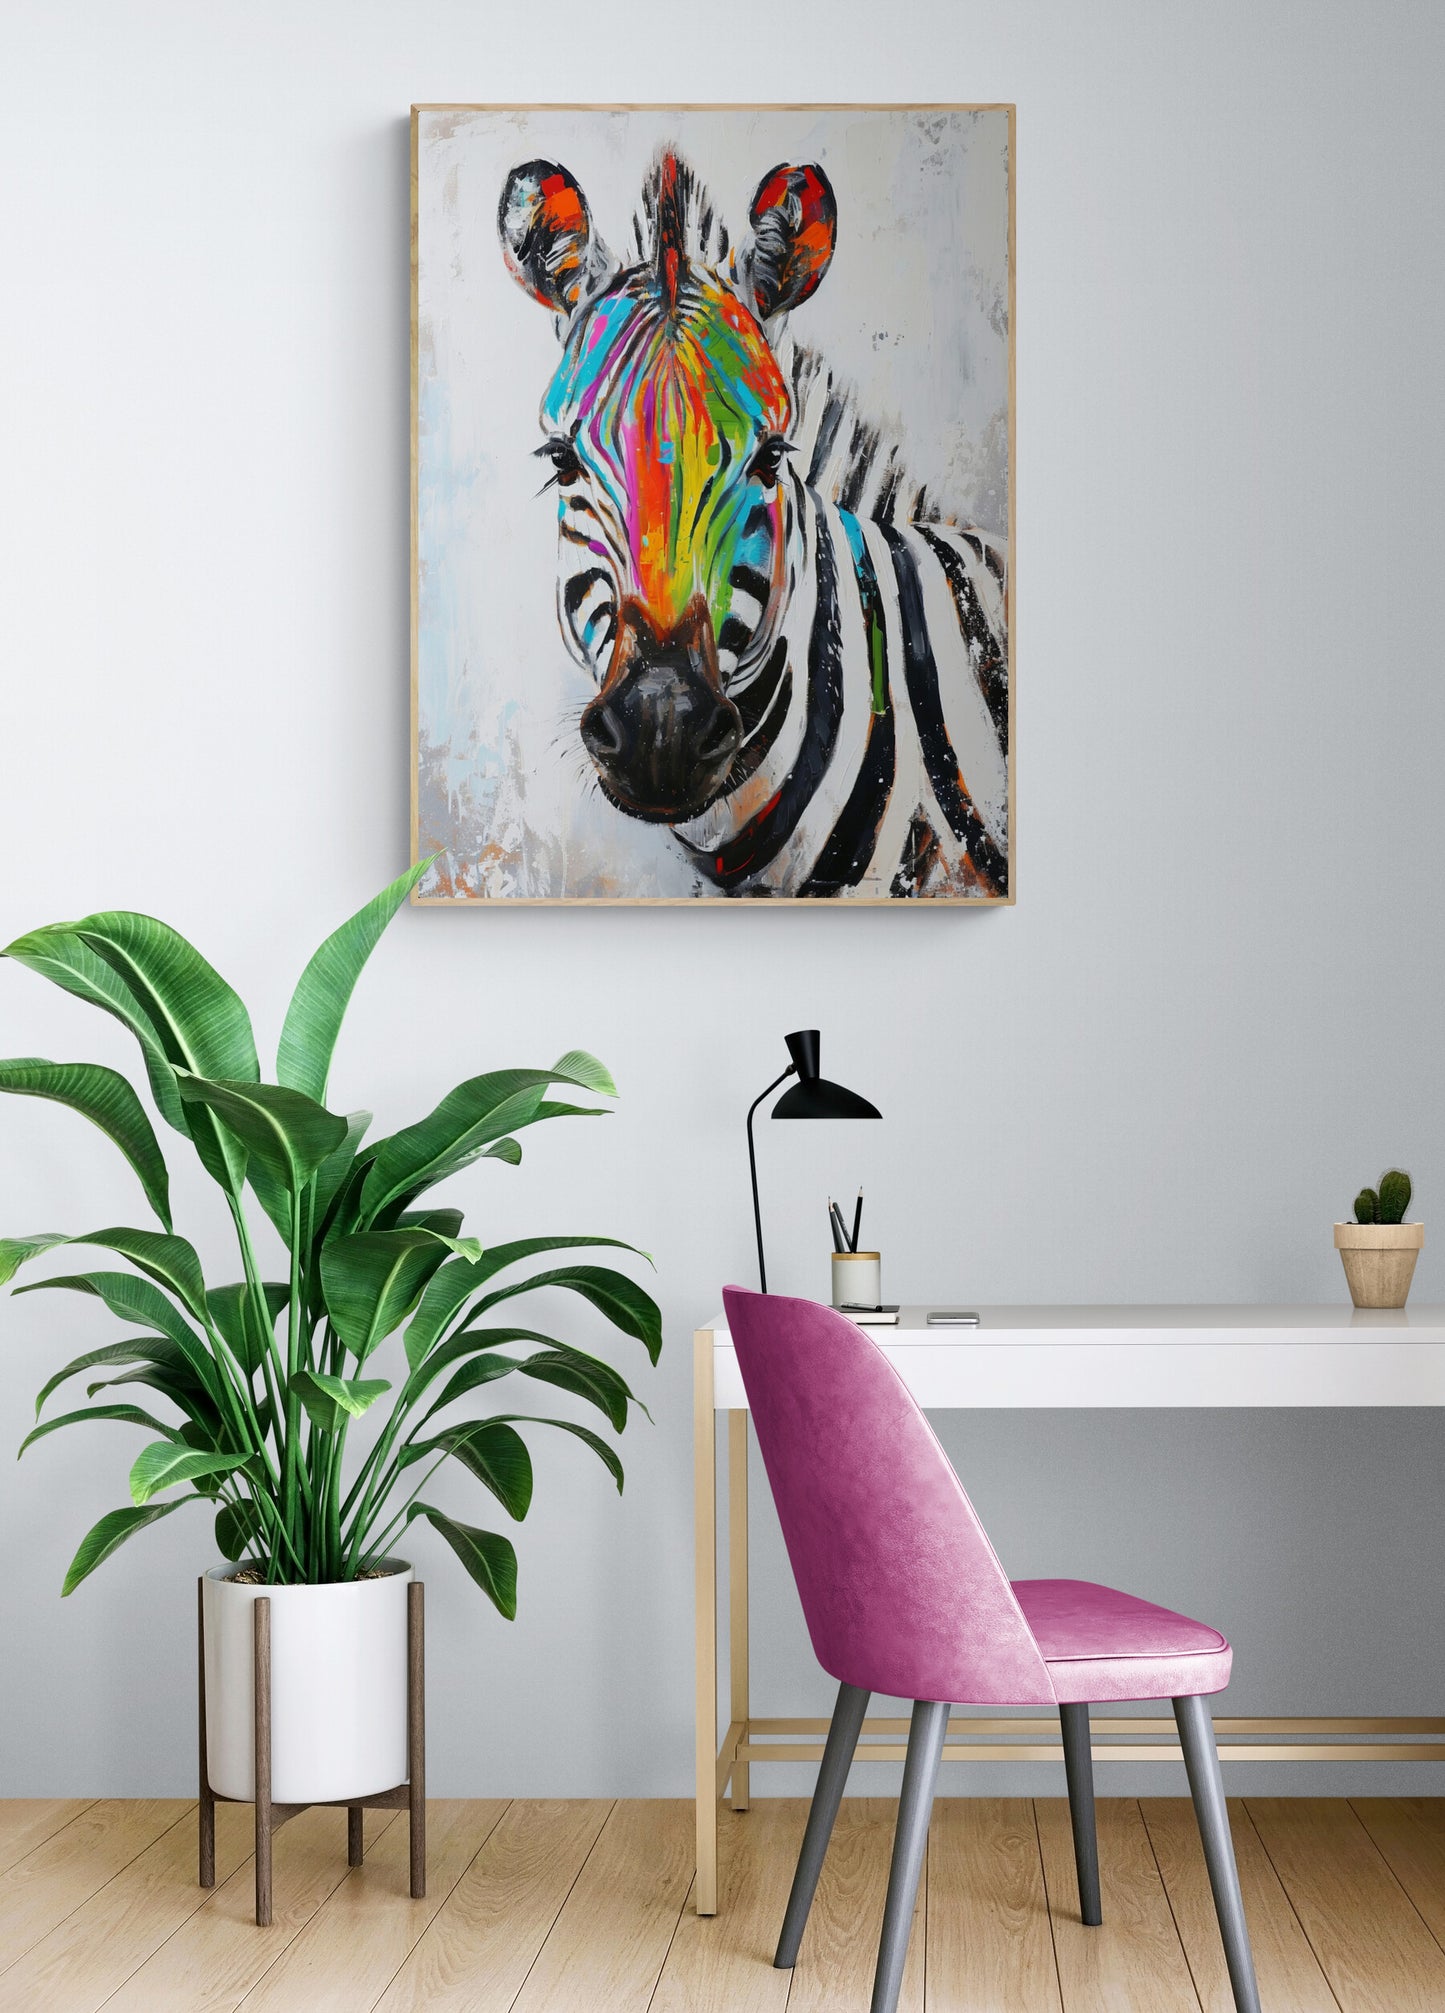 Dans un bureau à domicile, le tableau dynamique du zèbre ajoute une explosion de couleur au-dessus d'un bureau blanc, accompagné d'une chaise fuchsia et d'une plante luxuriante.